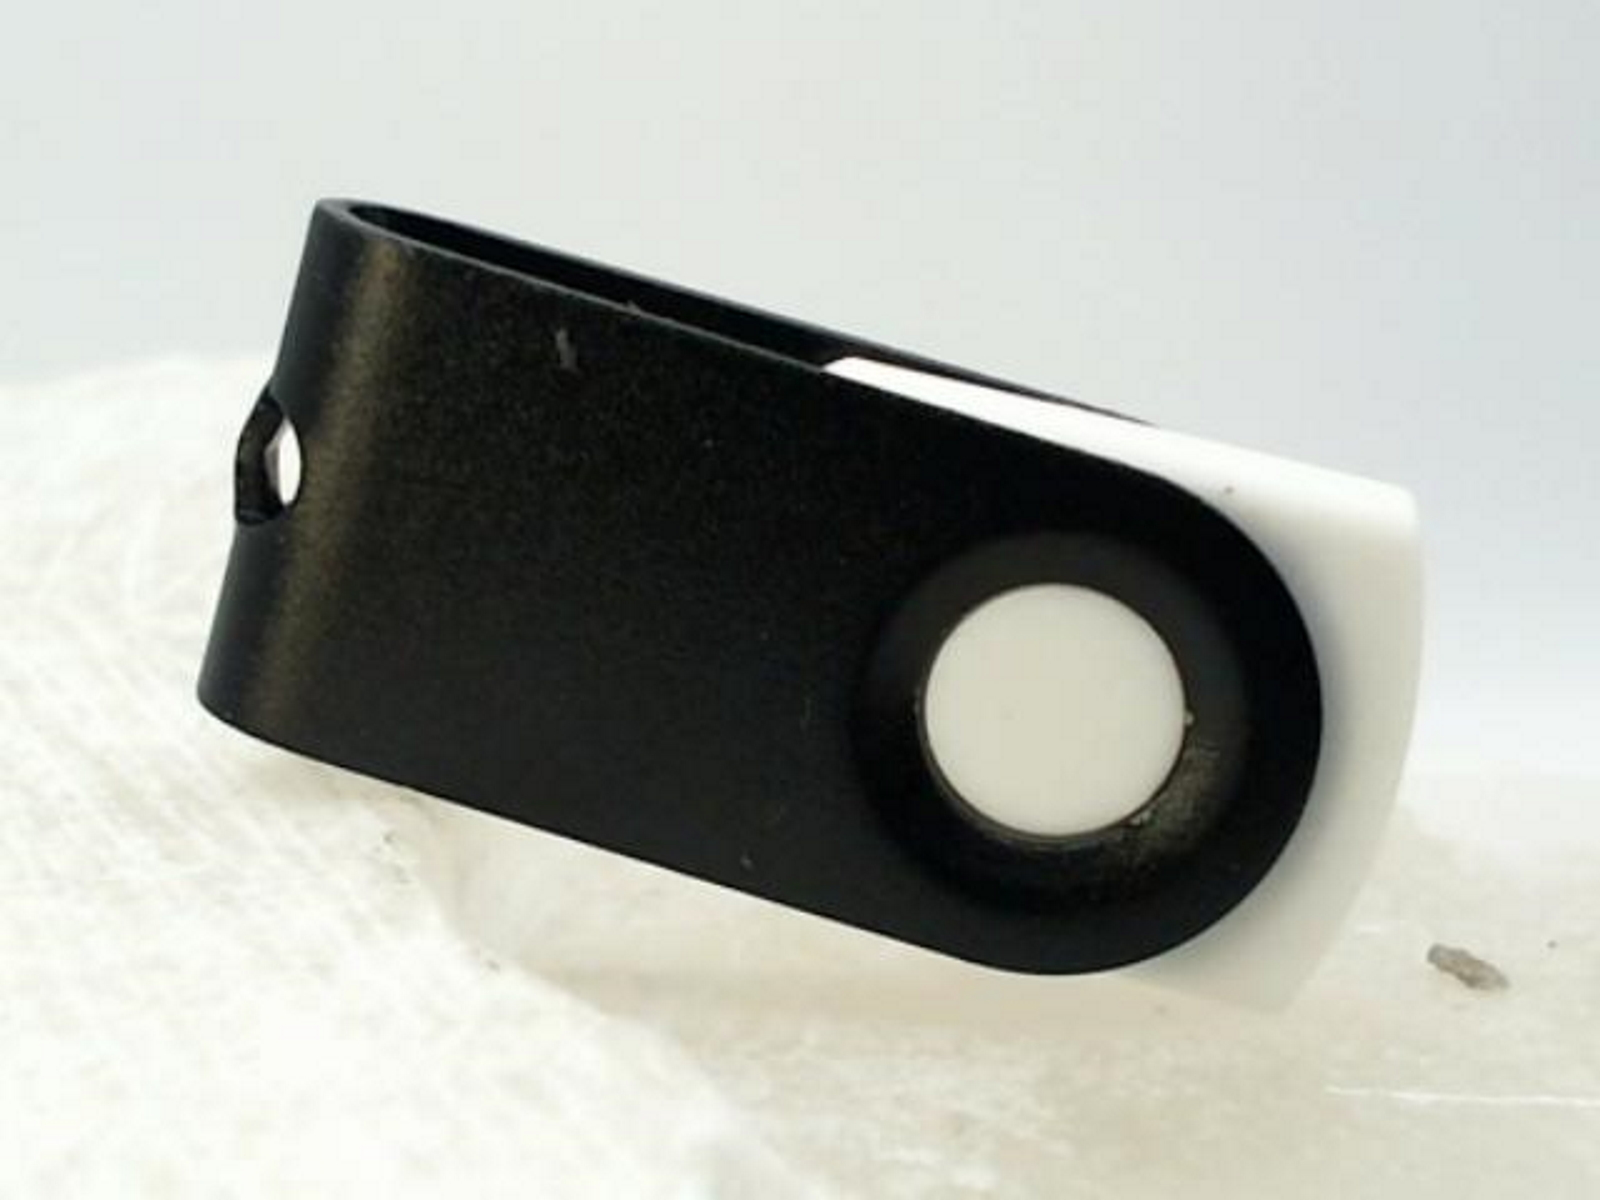 USB GERMANY ® MINI-SWIVEL USB-Stick 1 GB) (Weiß-Schwarz